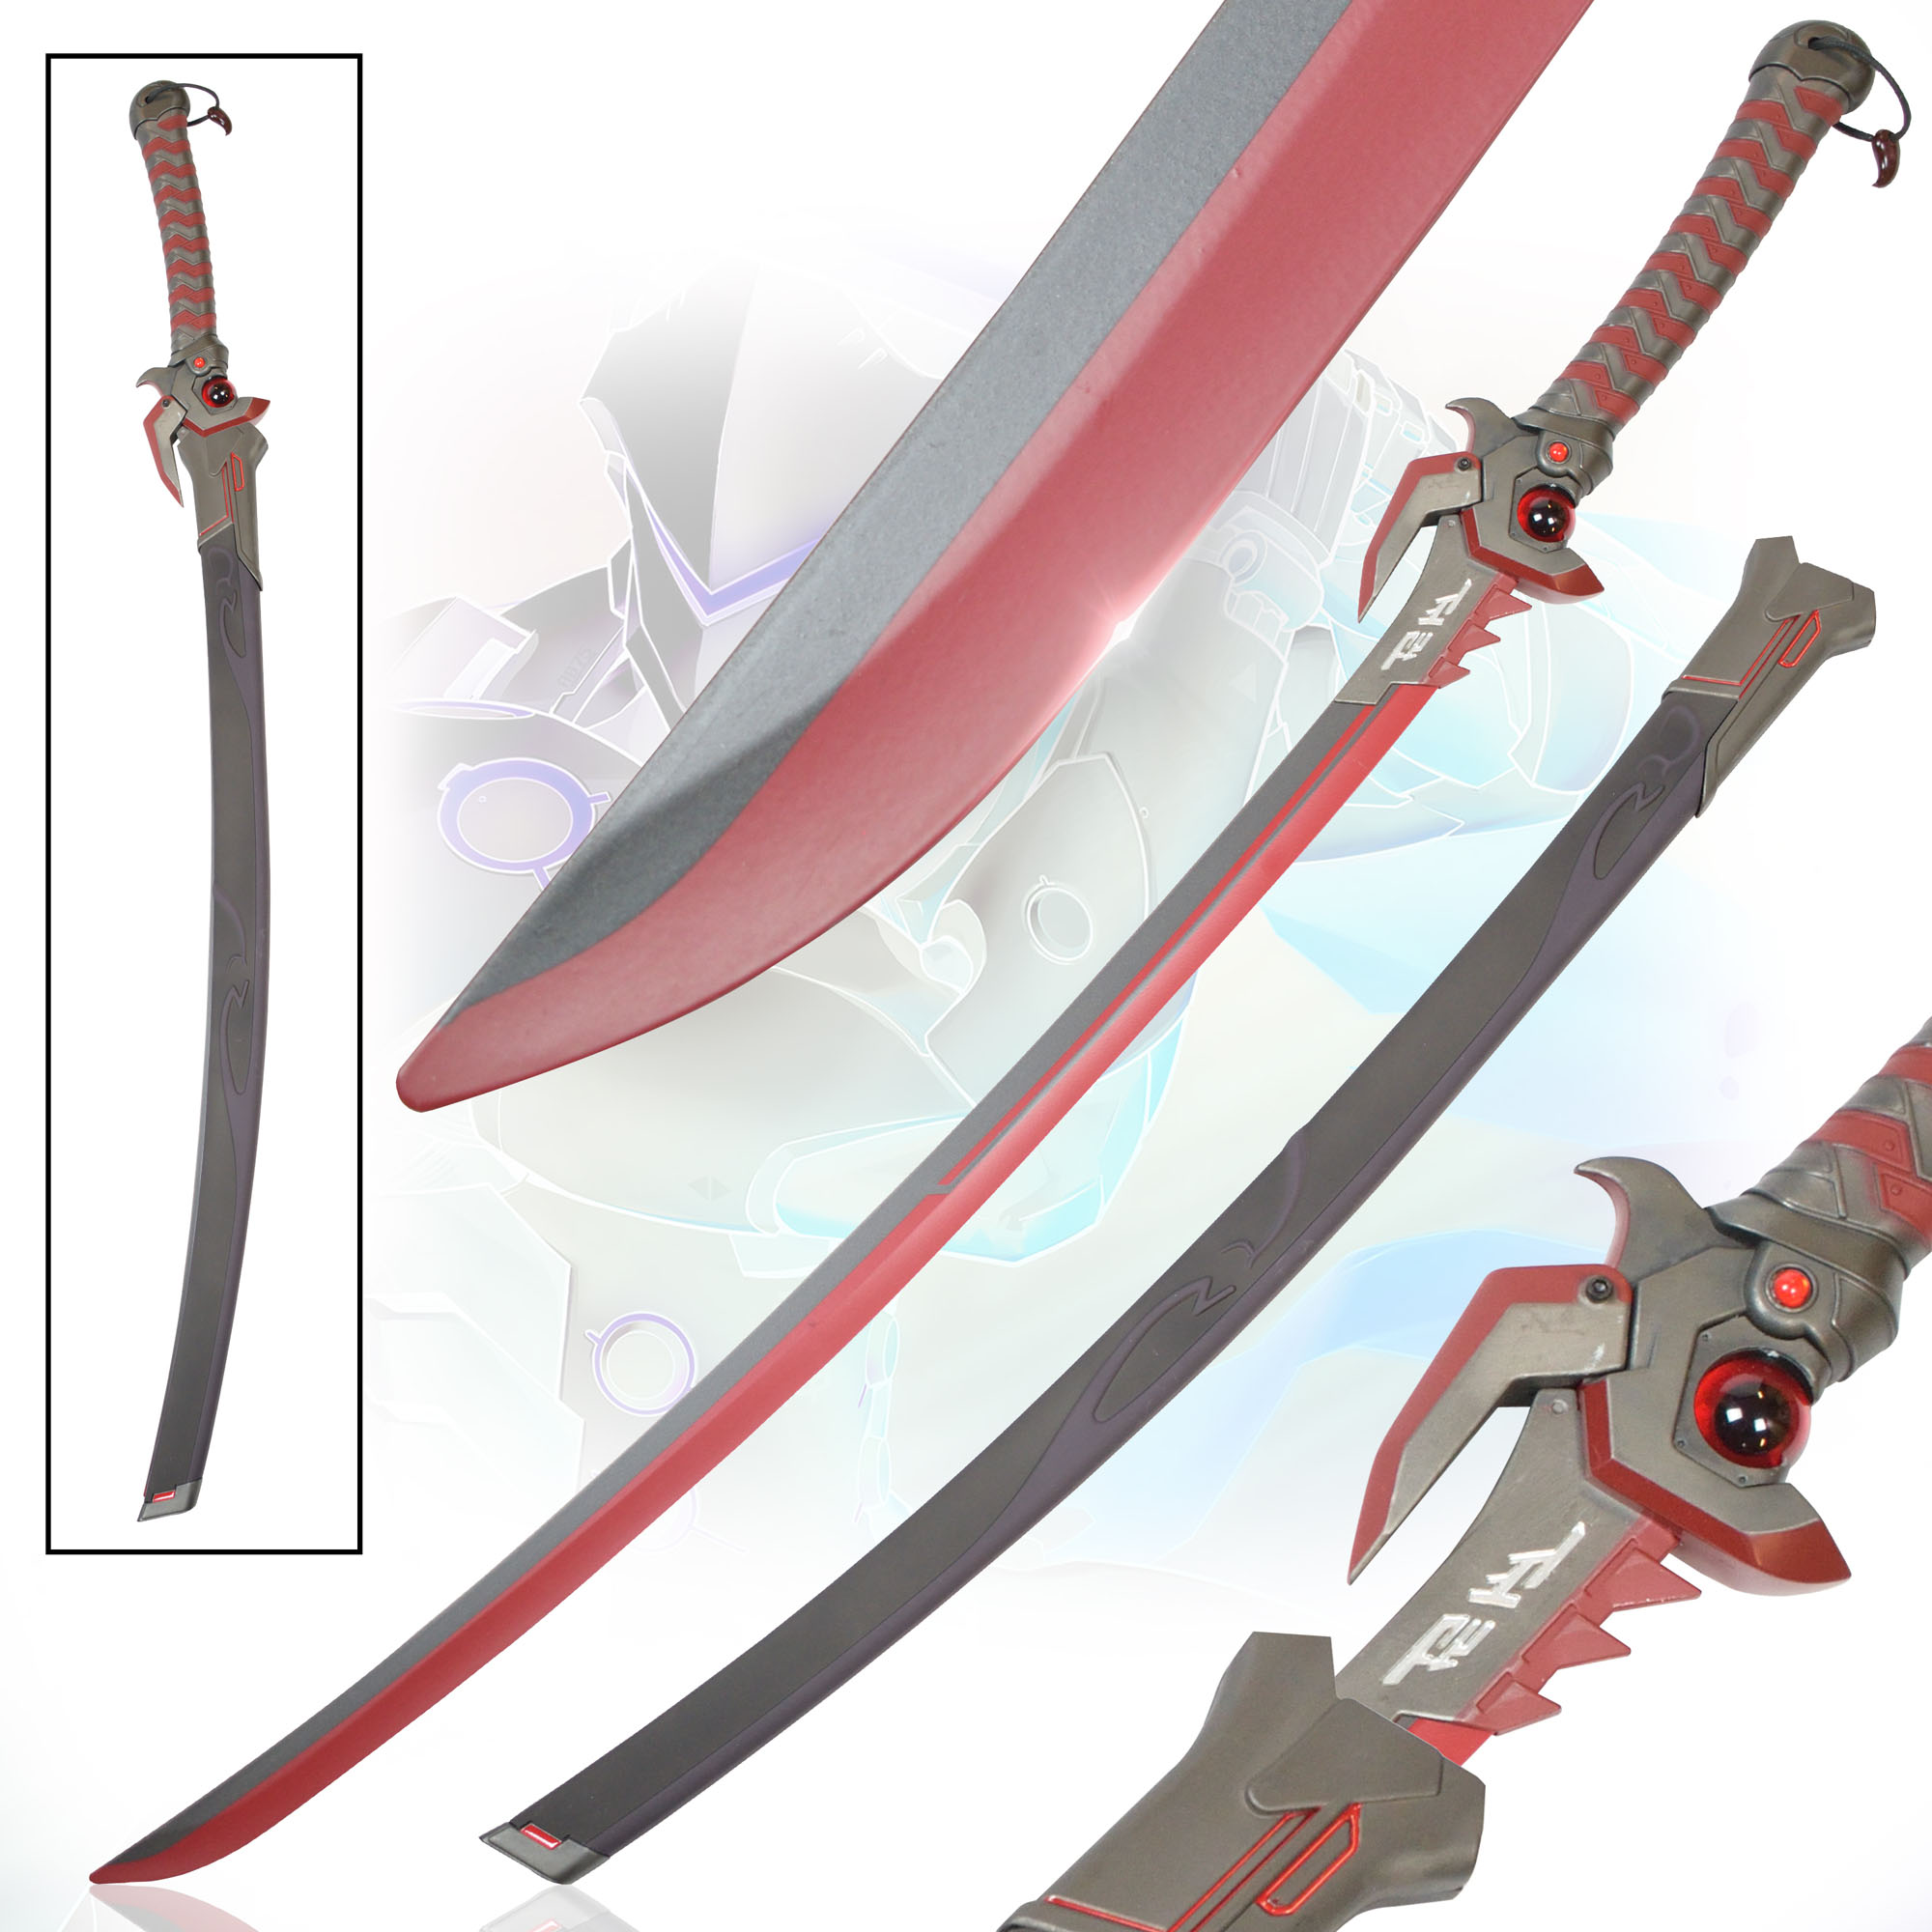 Overwatch - Genji Muramasa Sword